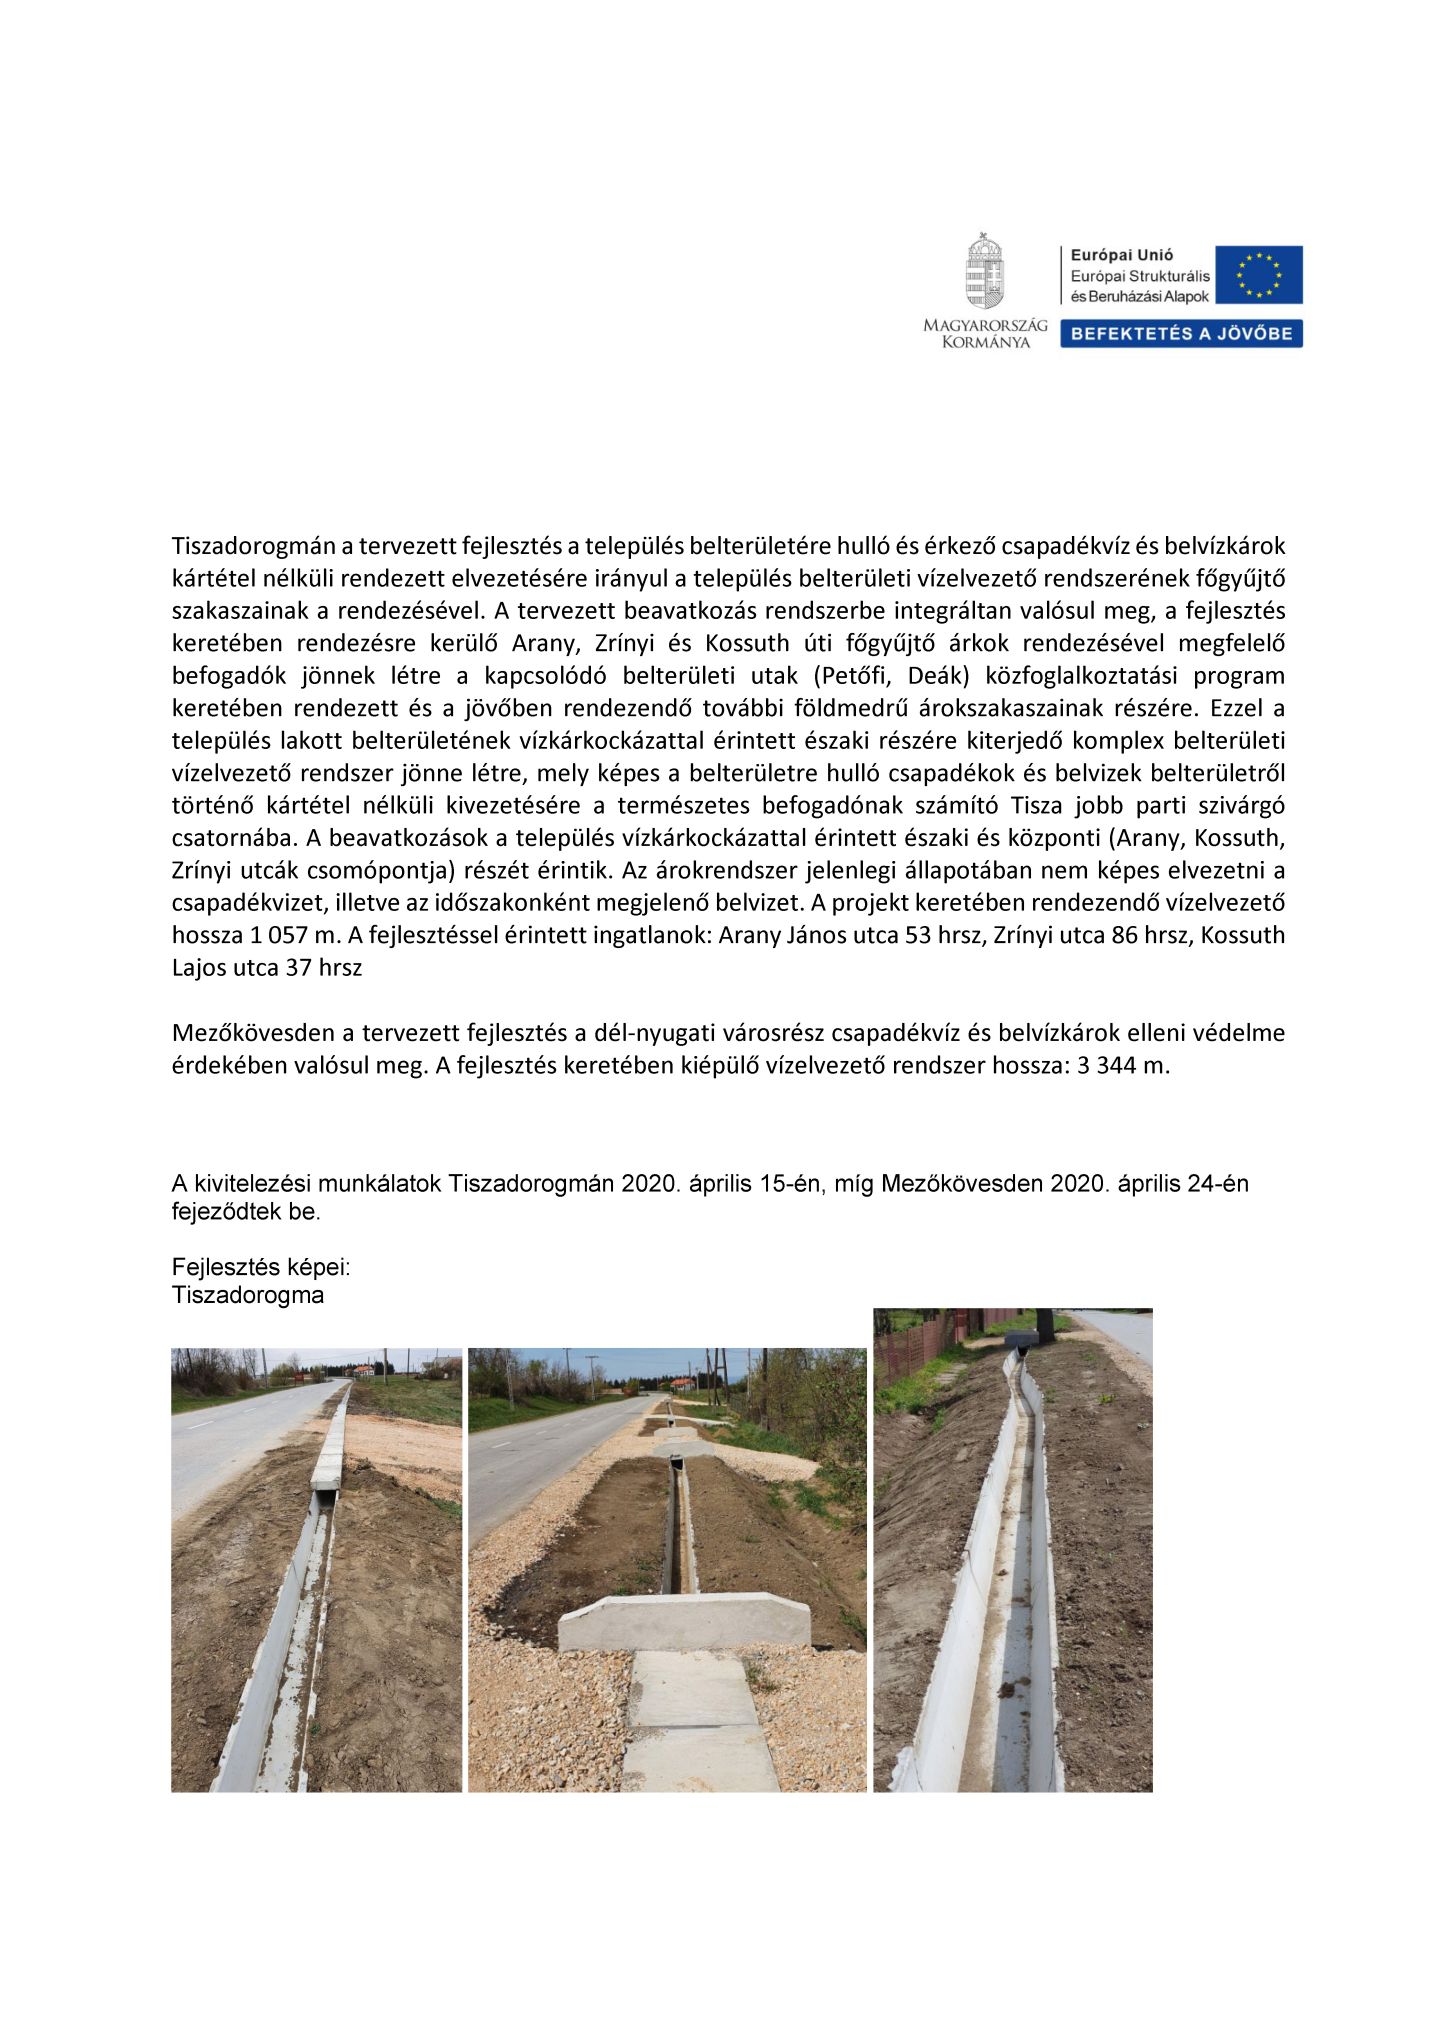 Tiszadorogma település és Mezőkövesd I. ütem belterületi vízrendezése projekt leírása első oldal